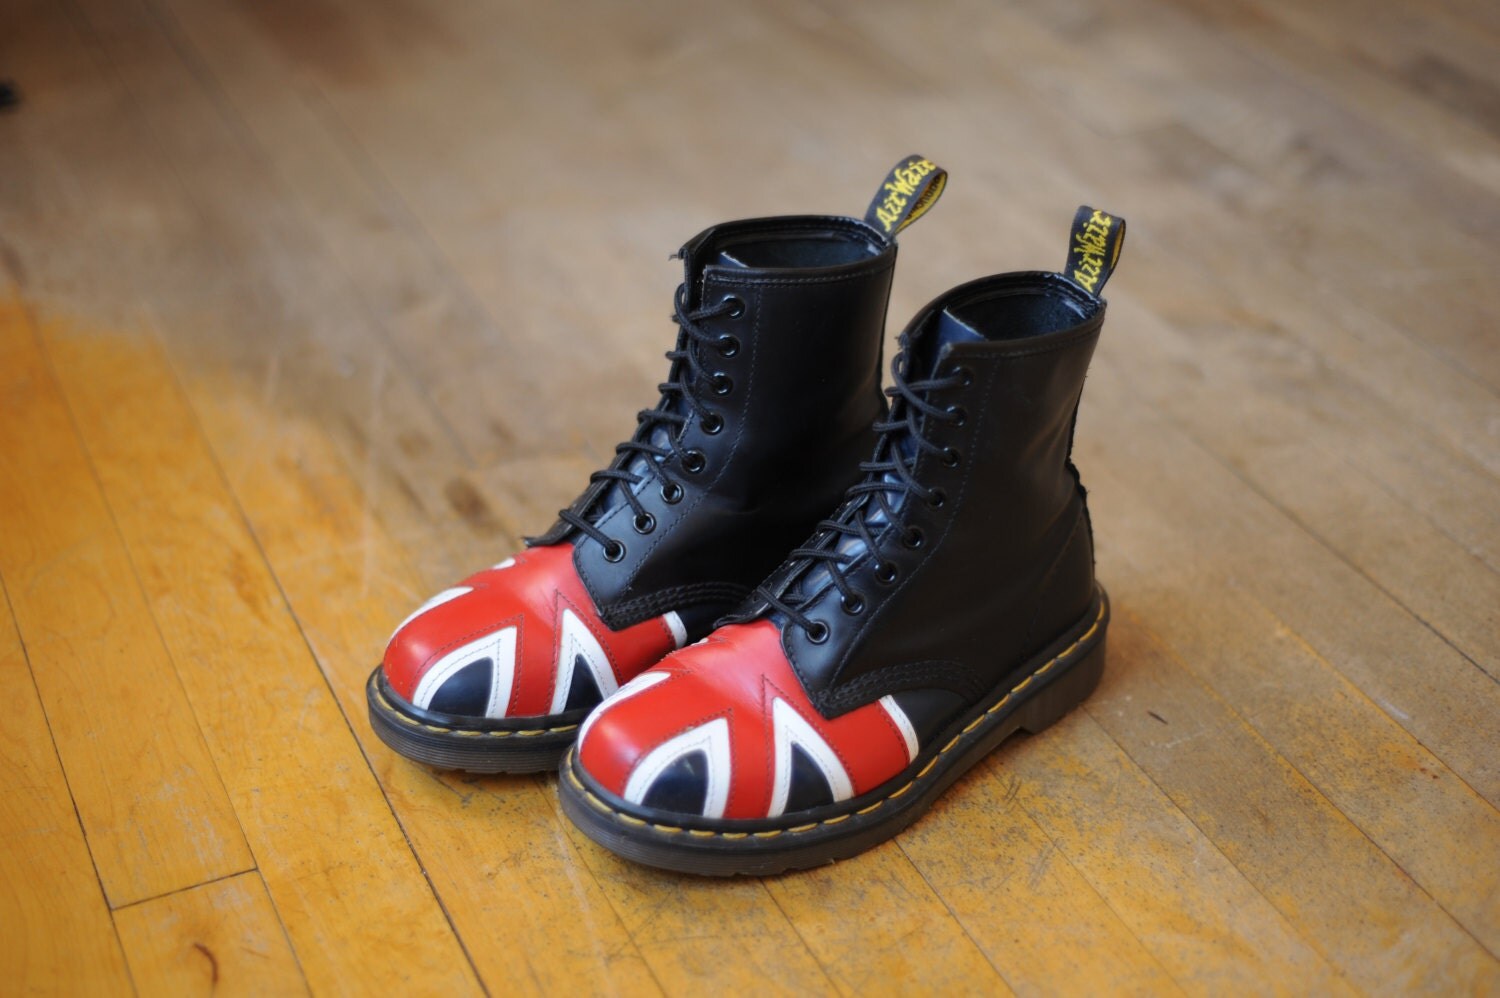 Vintage British Flag Dr. Martens Boots Made in England size UK